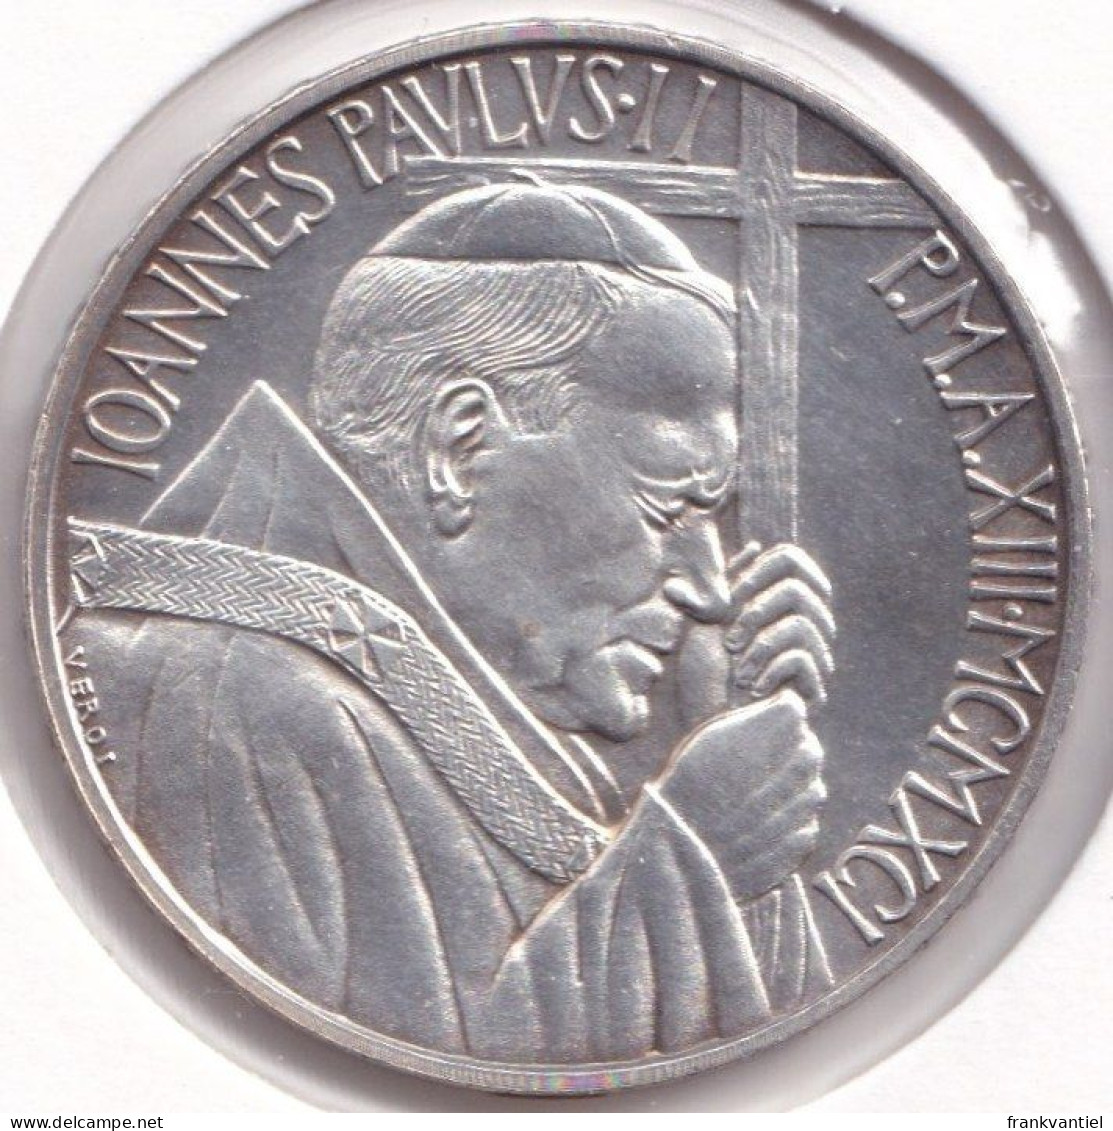 Vatican City KM-227 500 Lire 1991 - Vatikan